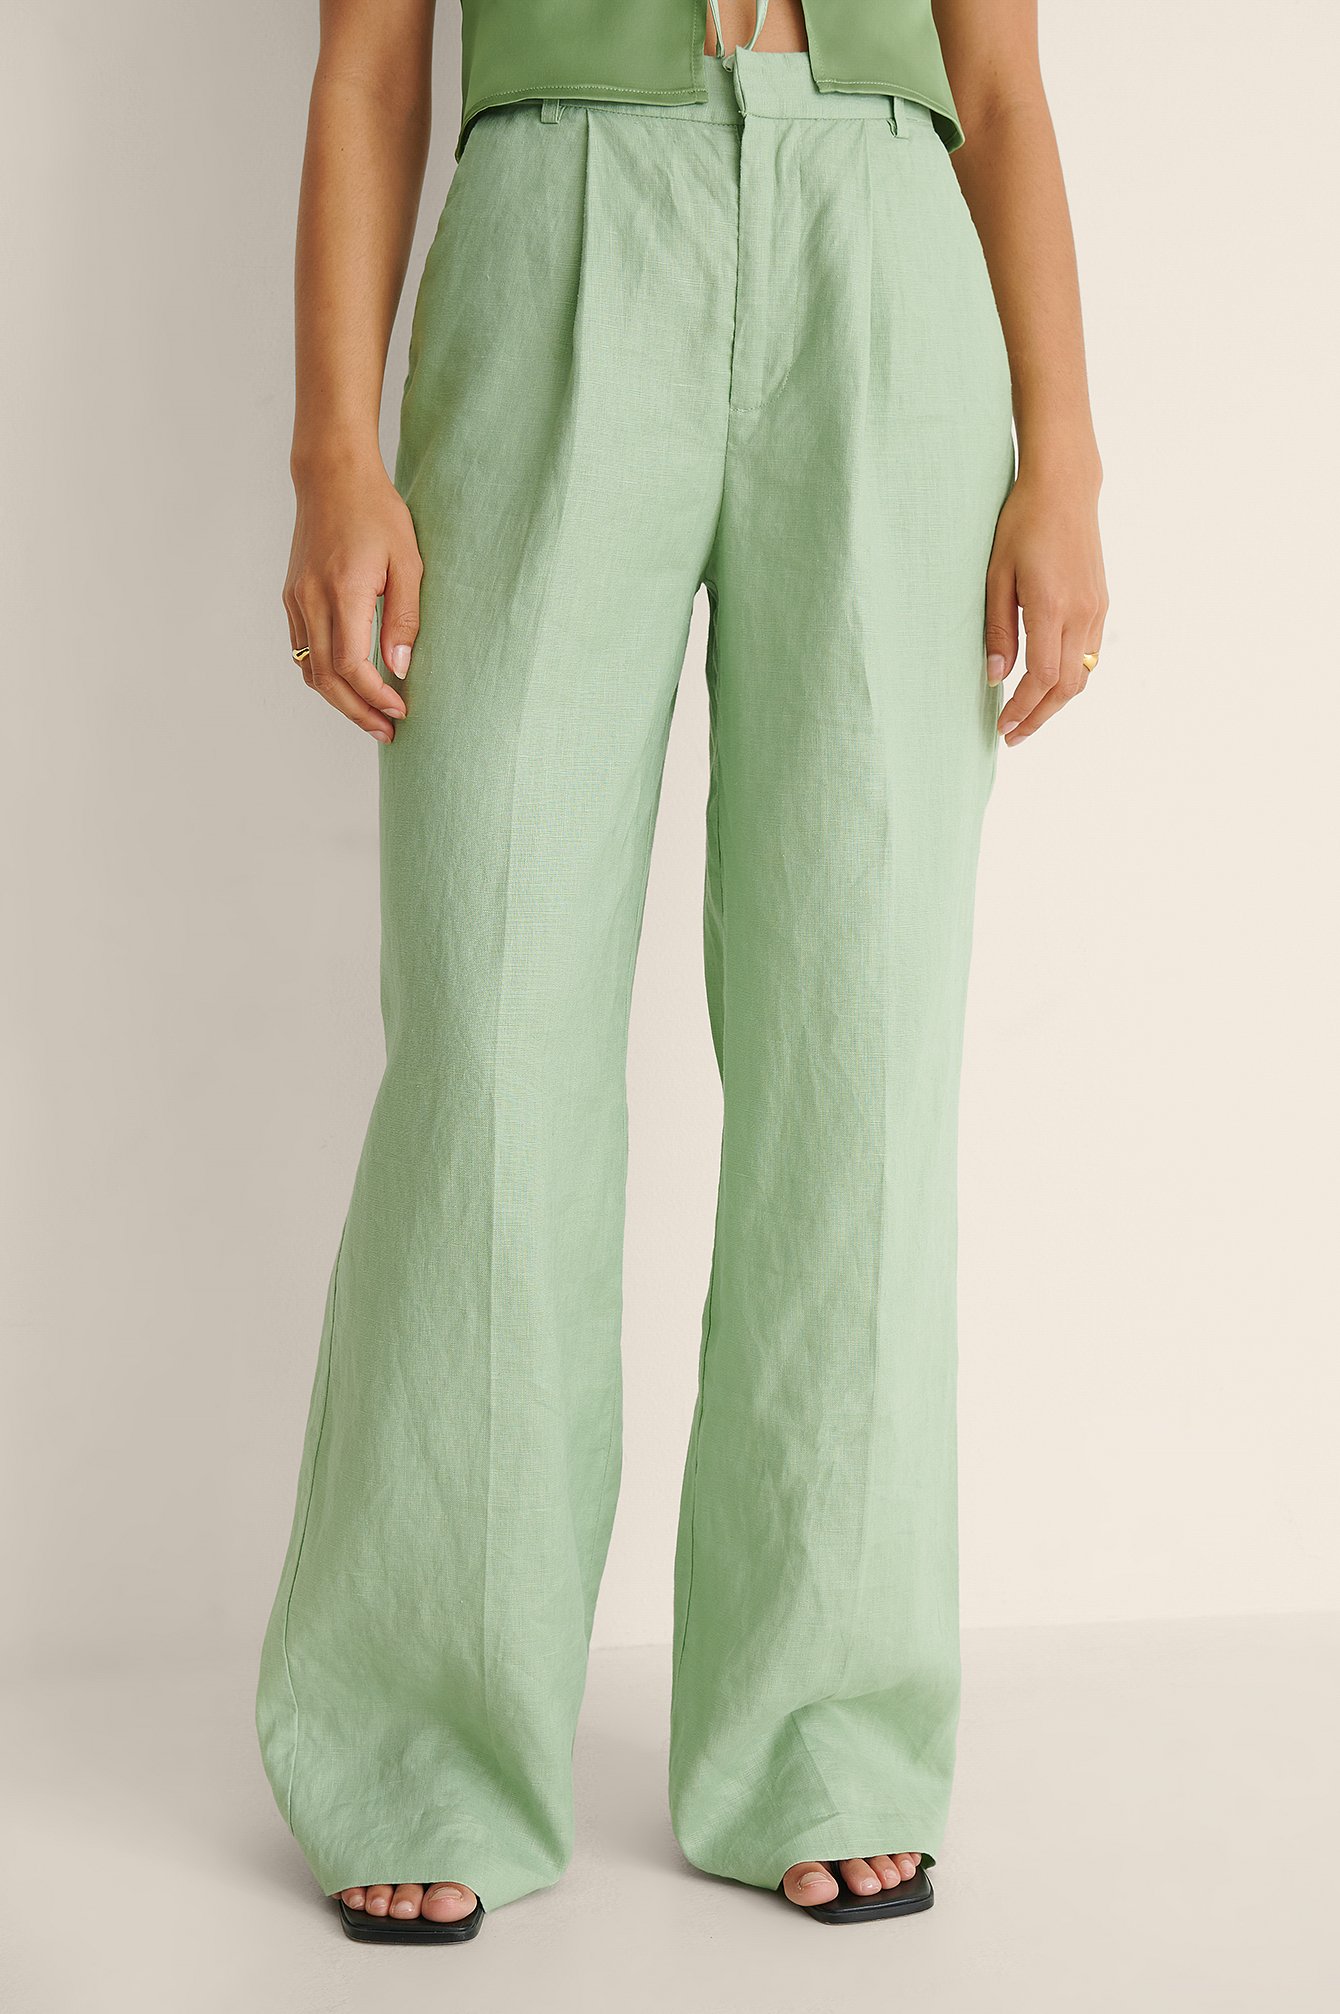 Green Długie Spodnie Garniturowe Z Lnu